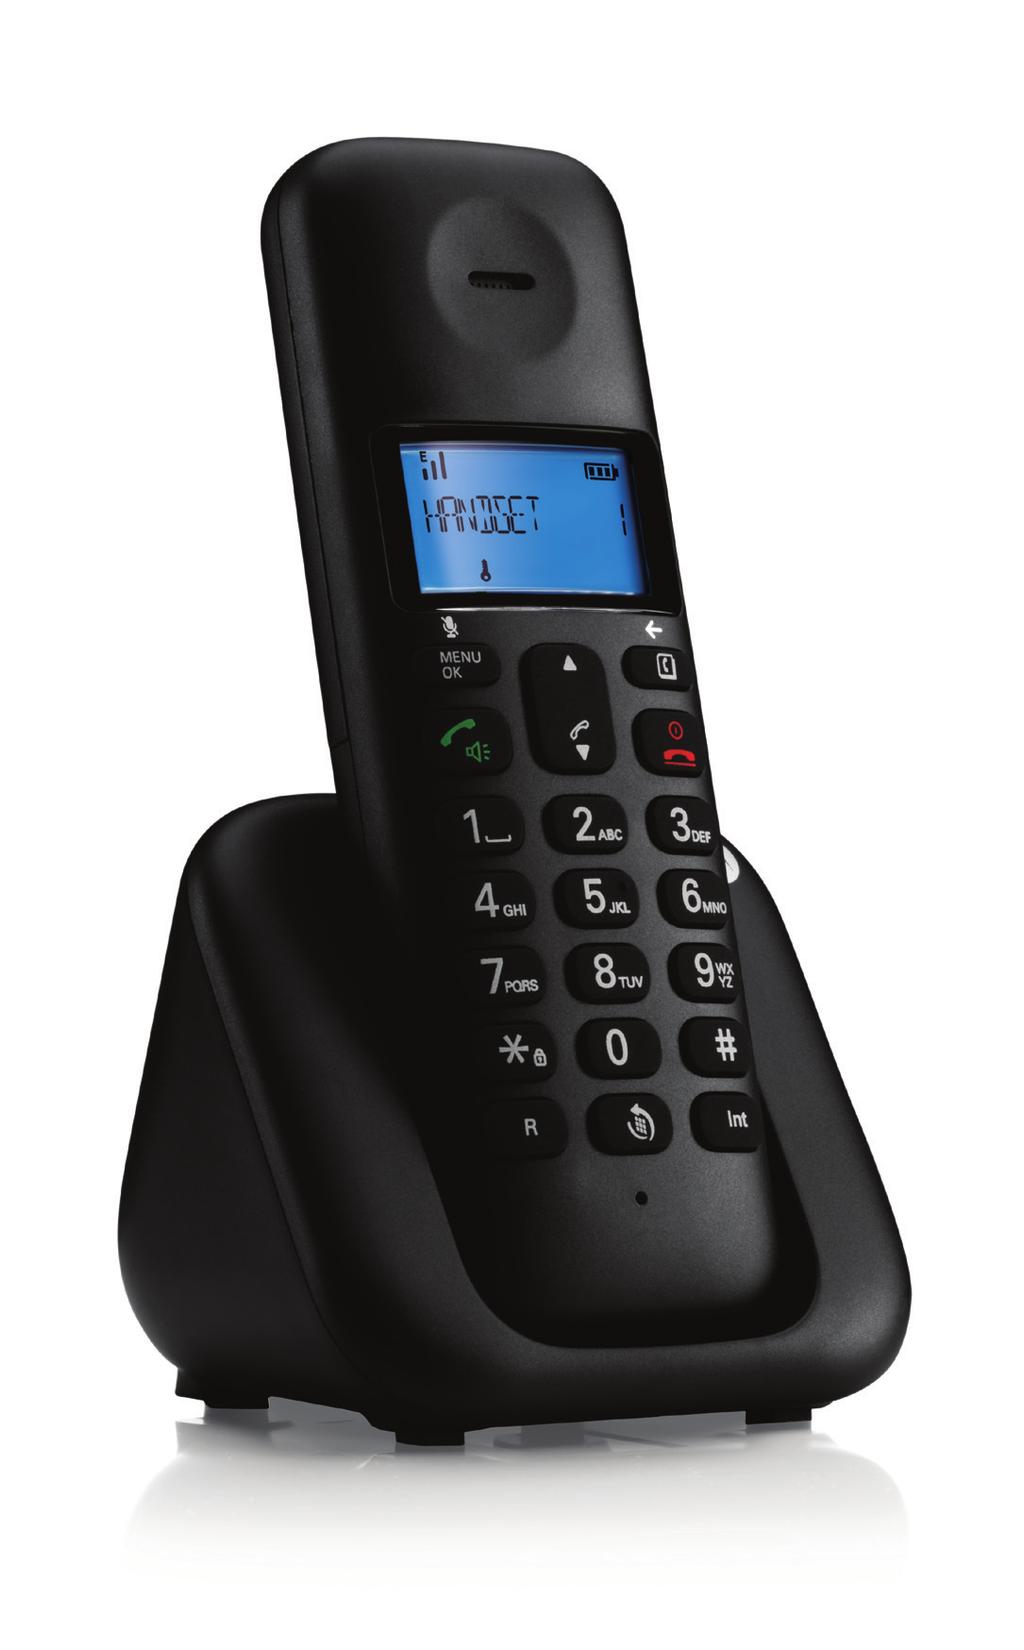 T301 Dar forma a las conversaciones Teléfono digital inalámbrico CARACTERÍSTICAS PRINCIPALES Gran pantalla retroiluminada en azul Manos libres Localización de terminales Llamadas internas Agenda de